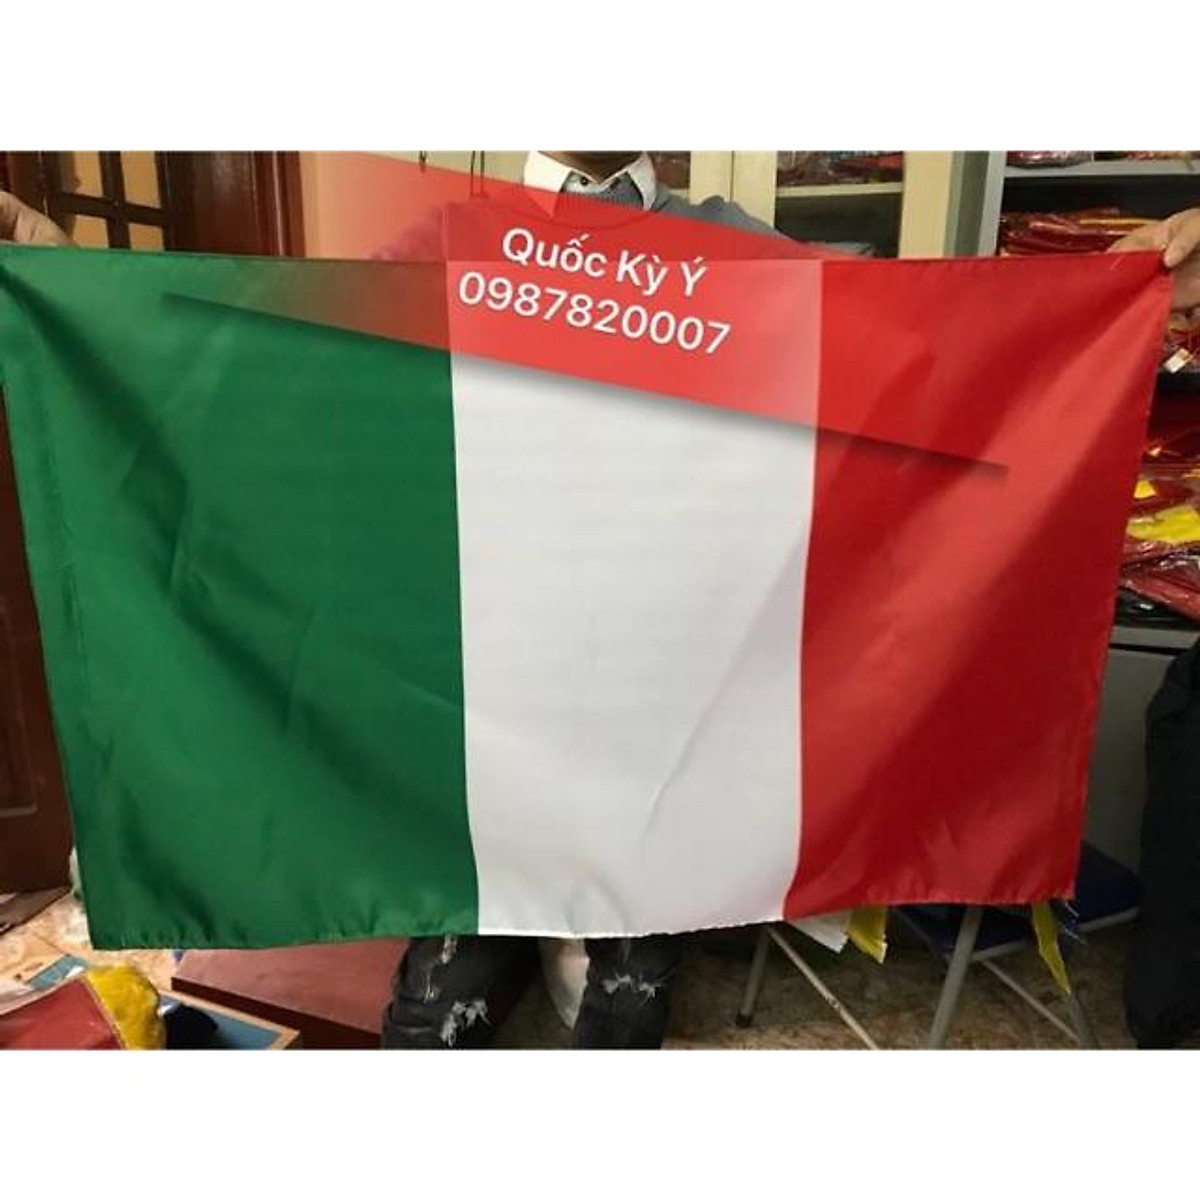 Mua Cờ quốc kỳ Ý 80x120cm tại In thêu may cờ Hoàng Gia quốc kỳ Ý
Bạn đang tìm kiếm một cờ quốc kỳ Ý 80x120cm tốt và chất lượng? Hãy đến với Hoàng Gia, nơi cung cấp các sản phẩm in, thêu và may cờ chất lượng hàng đầu. Hãy mang về cờ của Ý và trưng bày trong ngôi nhà của bạn, tôn lên sự đẹp mắt và tình yêu đối với quốc gia của bạn.